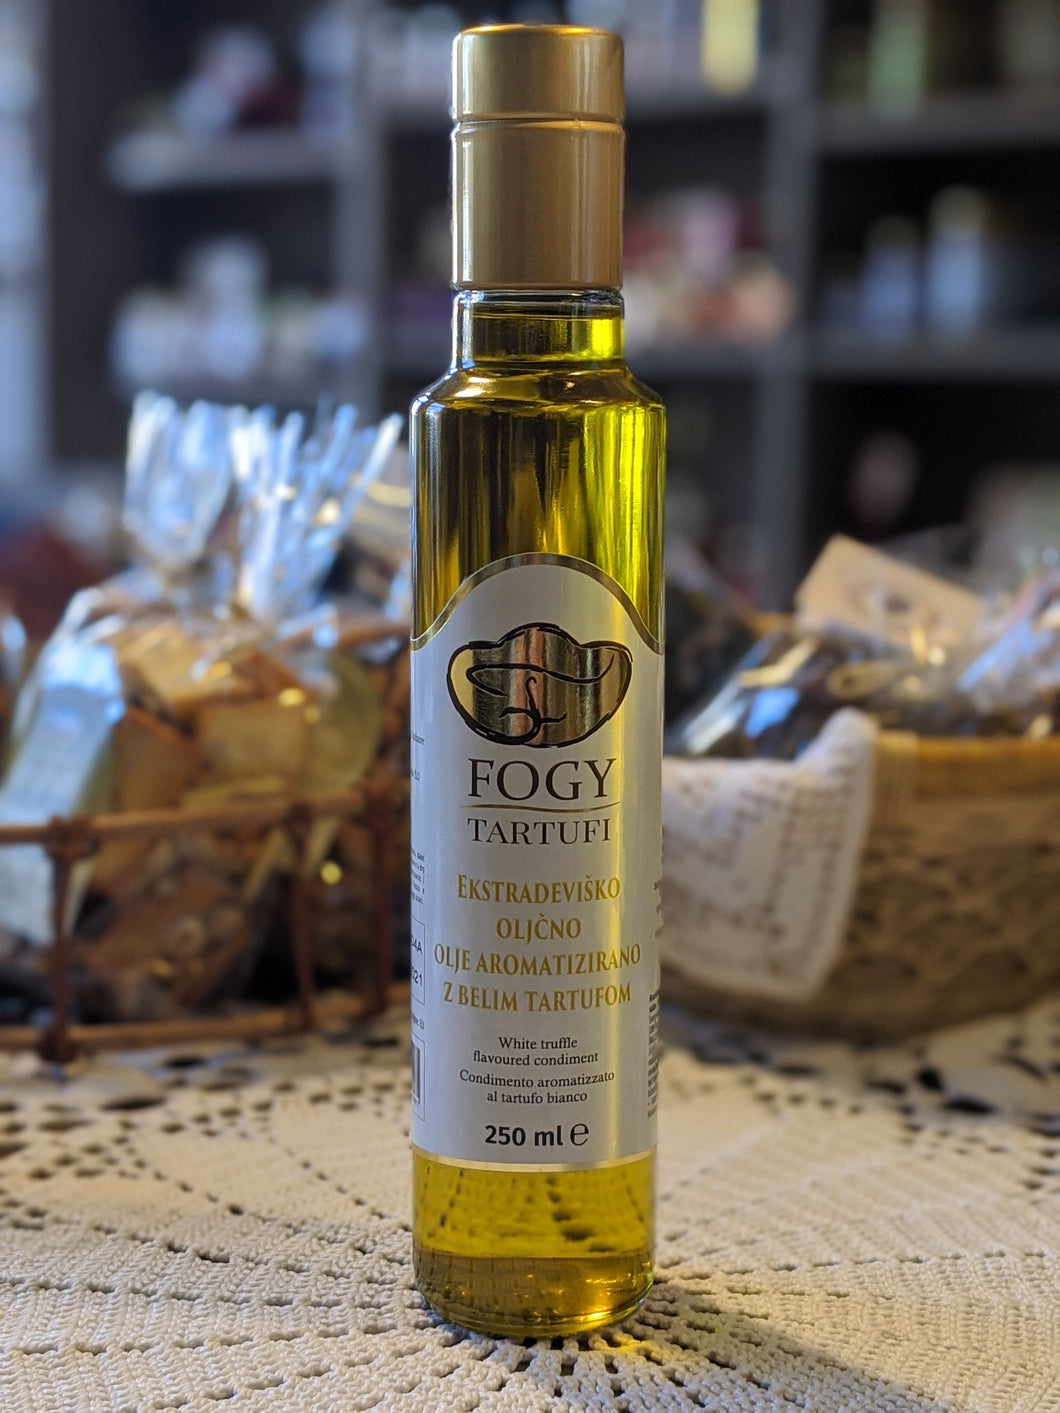 Ekstradeviško oljčno olje aromatizirano z belimi tartufi 250ml, 100ml